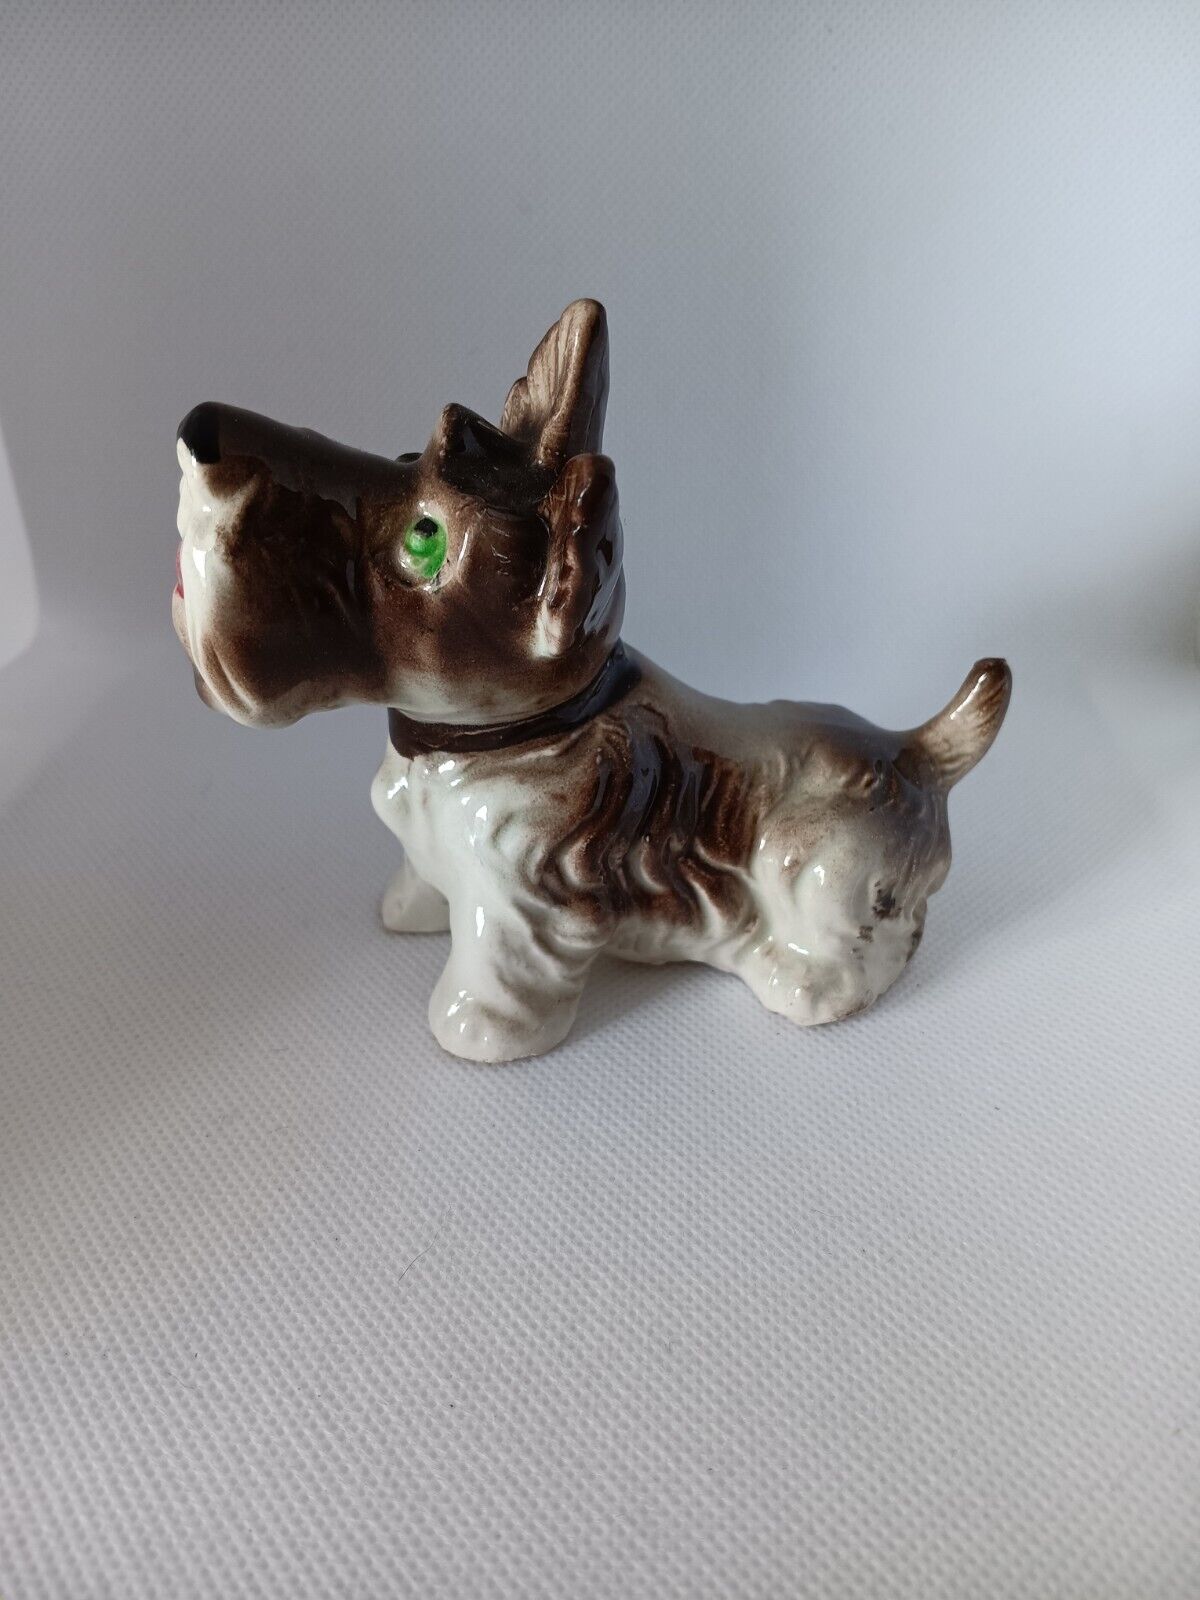 Vintage SCHNAUZER Puppy Dog Porcelain Figurine with Green Eyes 